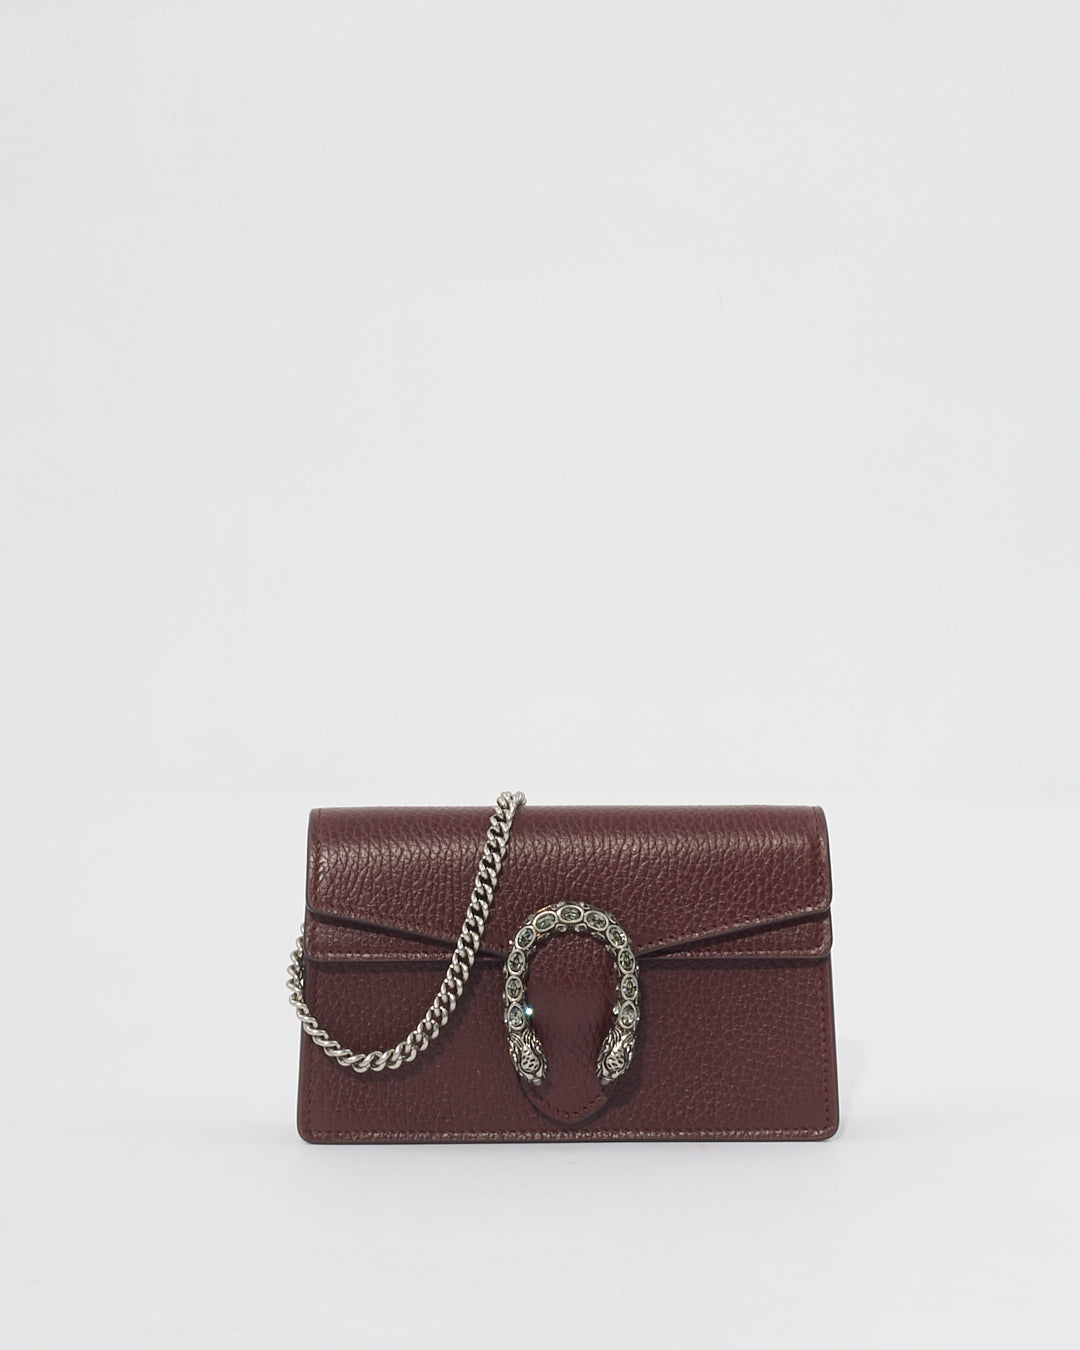 Gucci Dionysus Super Mini sac en cuir bordeaux